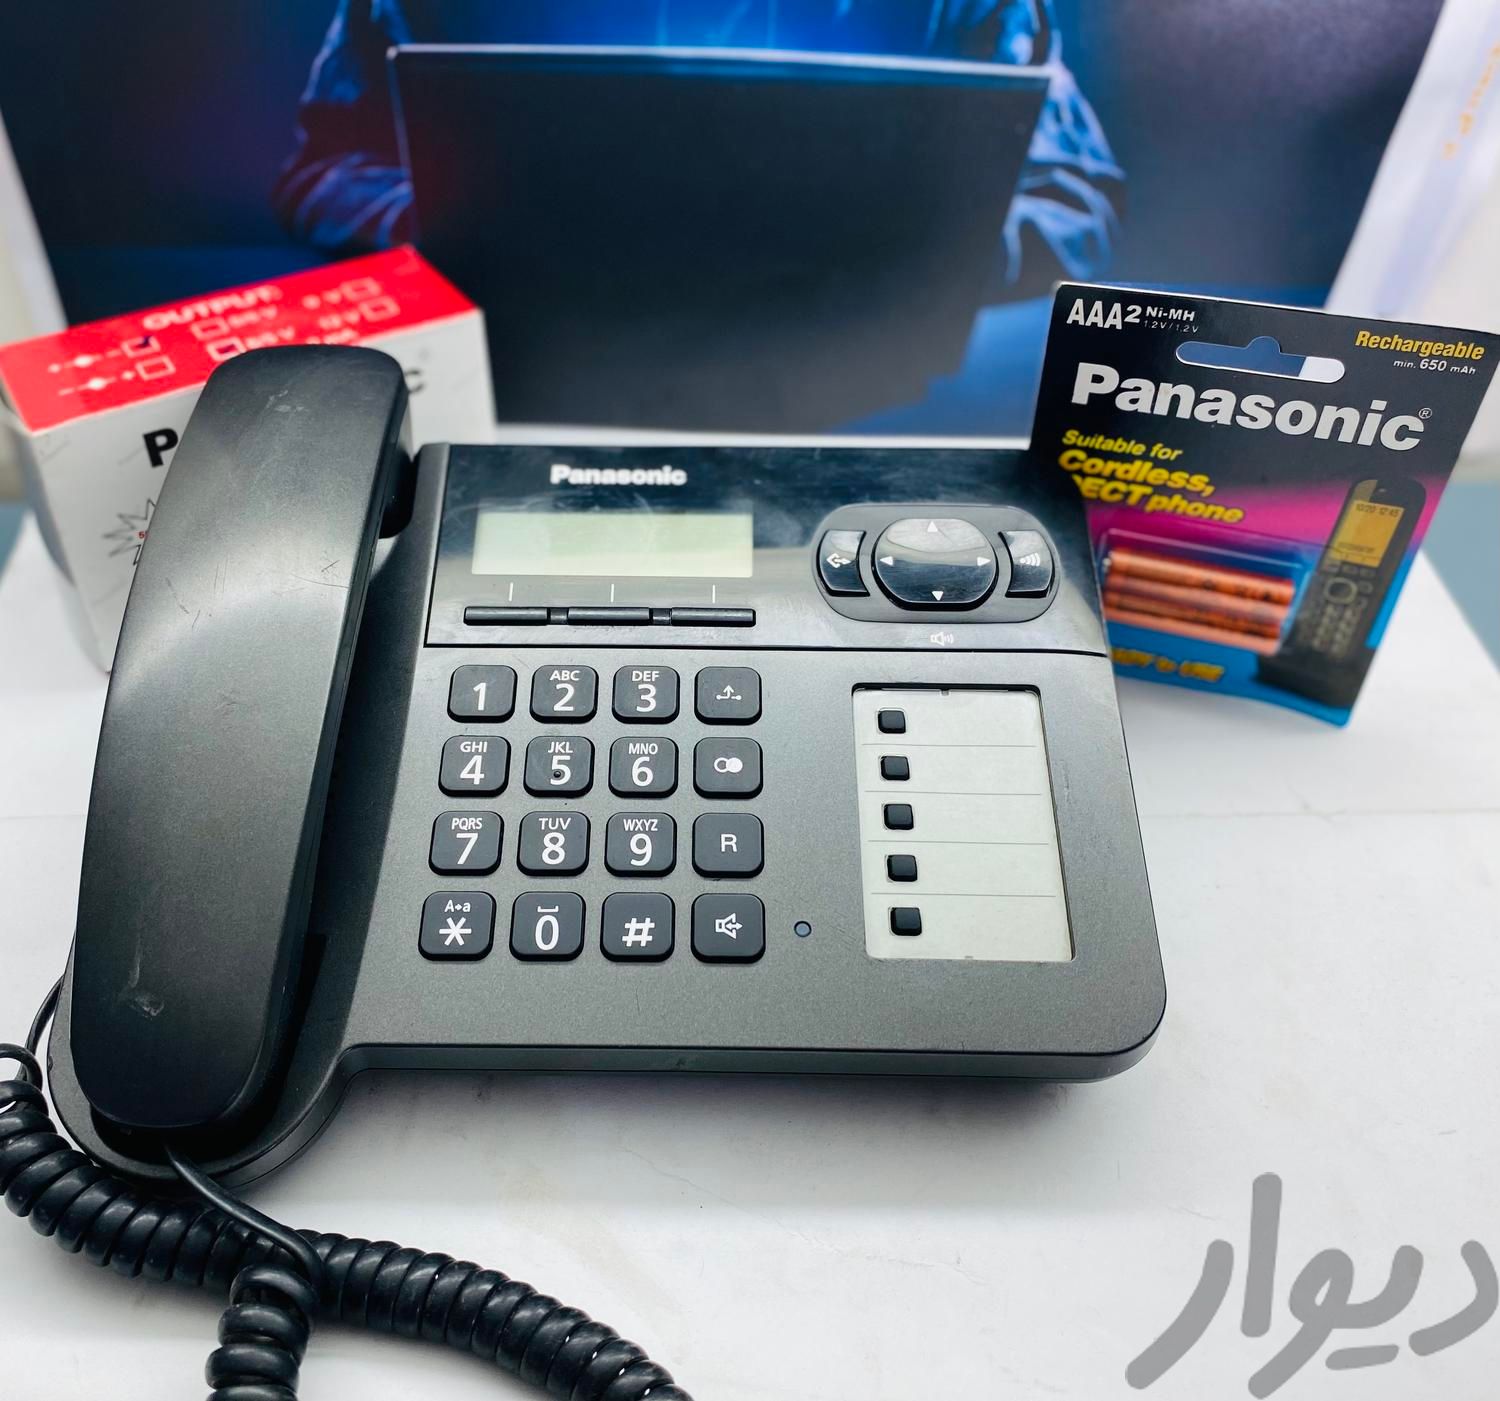 تلفن دو گوشی پاناسونیک مدلKX-TG5451|رایانه رومیزی|تهران, مسعودیه|دیوار